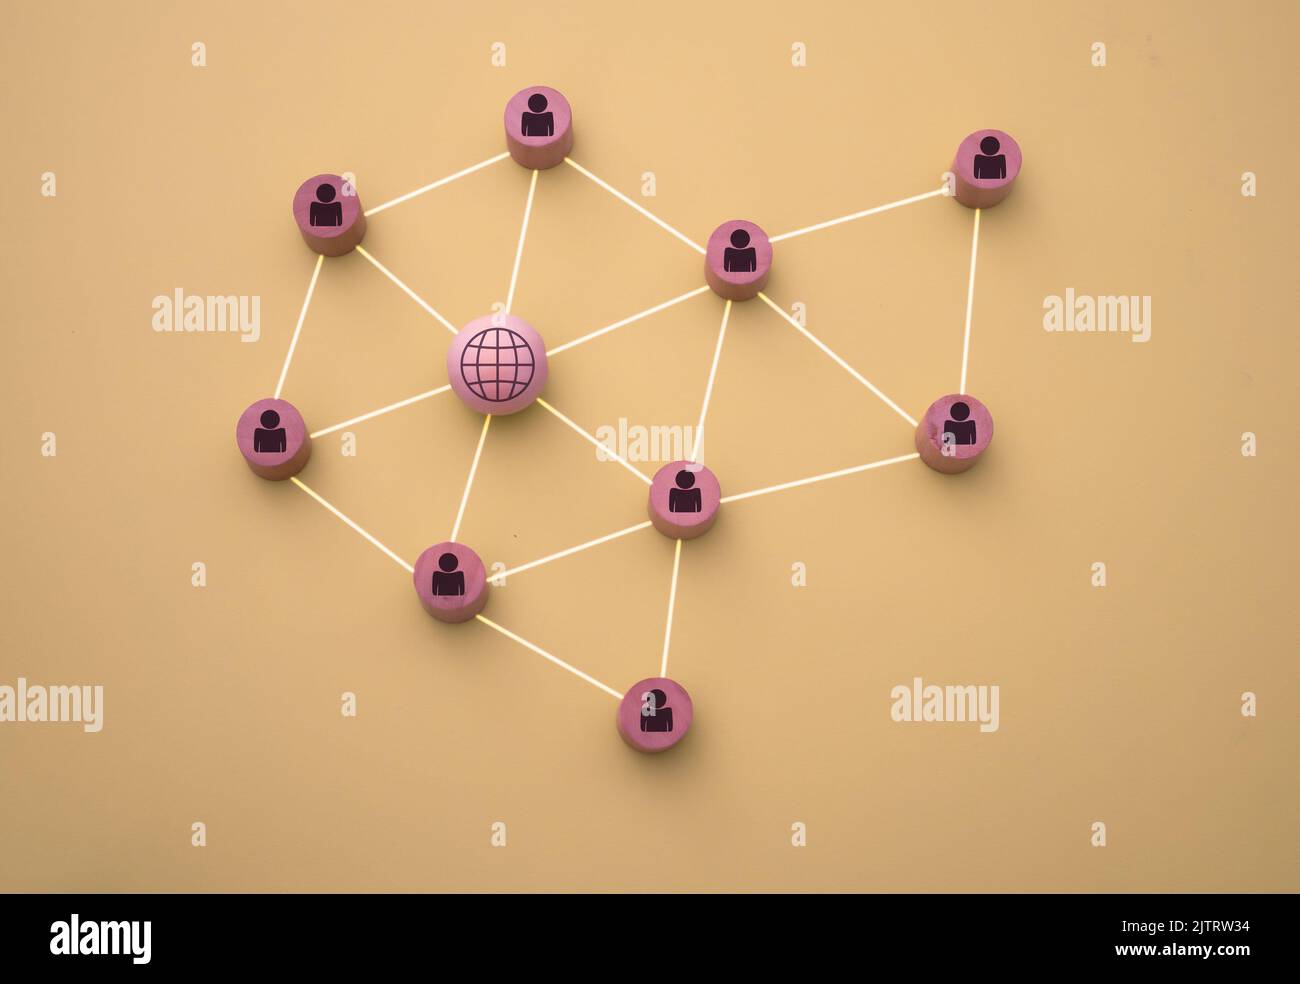 3D Darstellung der Verbindung der Menschen mit dem Netz in Form eines Netzes, das mit Holzstücken auf sandfarbenem Hintergrund dargestellt ist Stockfoto